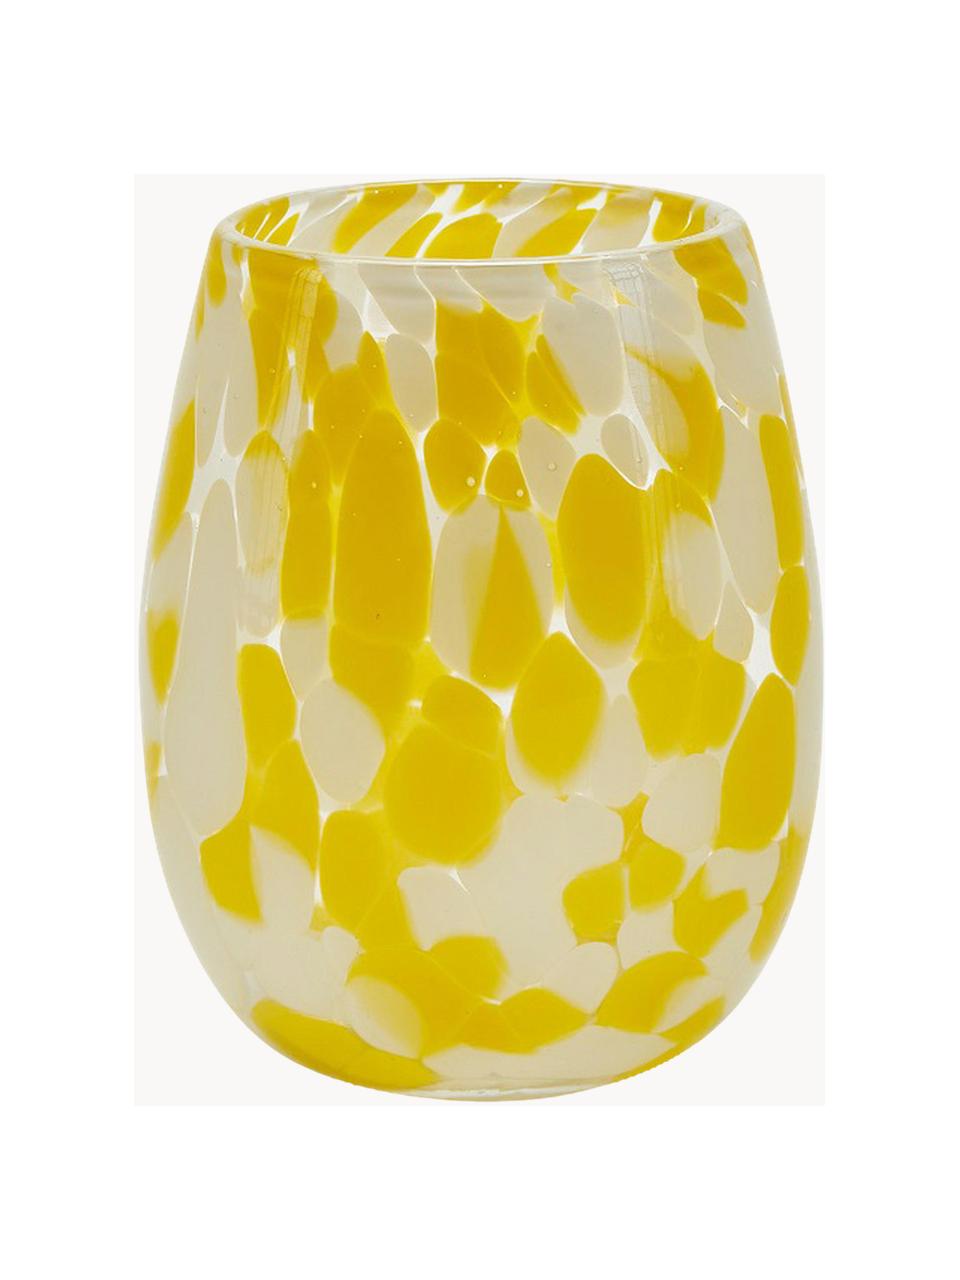 Szklanka Dots, 6 szt., Szkło, Żółty, biały, Ø 10 x W 21 cm, 400 ml